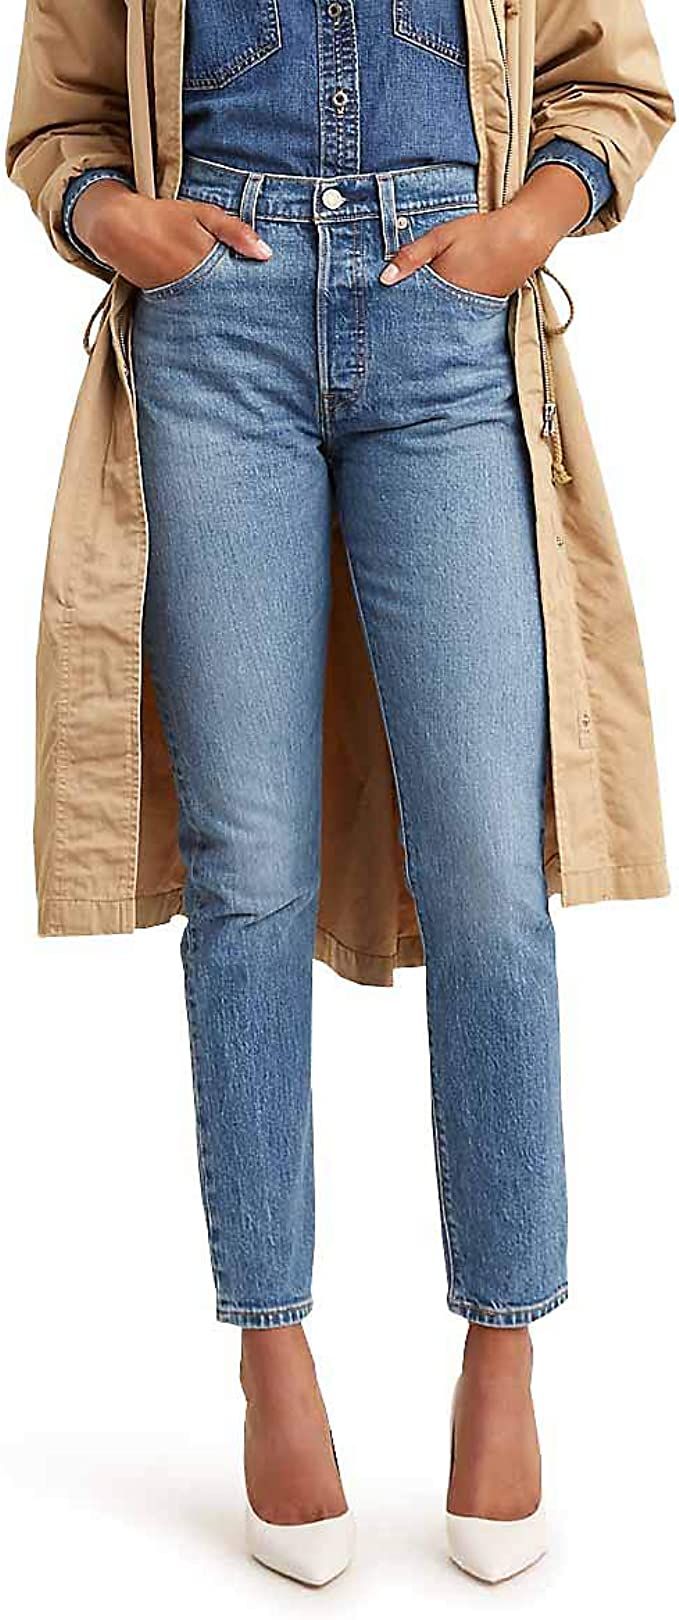 Levi's Women's Premium 501 Skinny Jeans | Amazon (US)